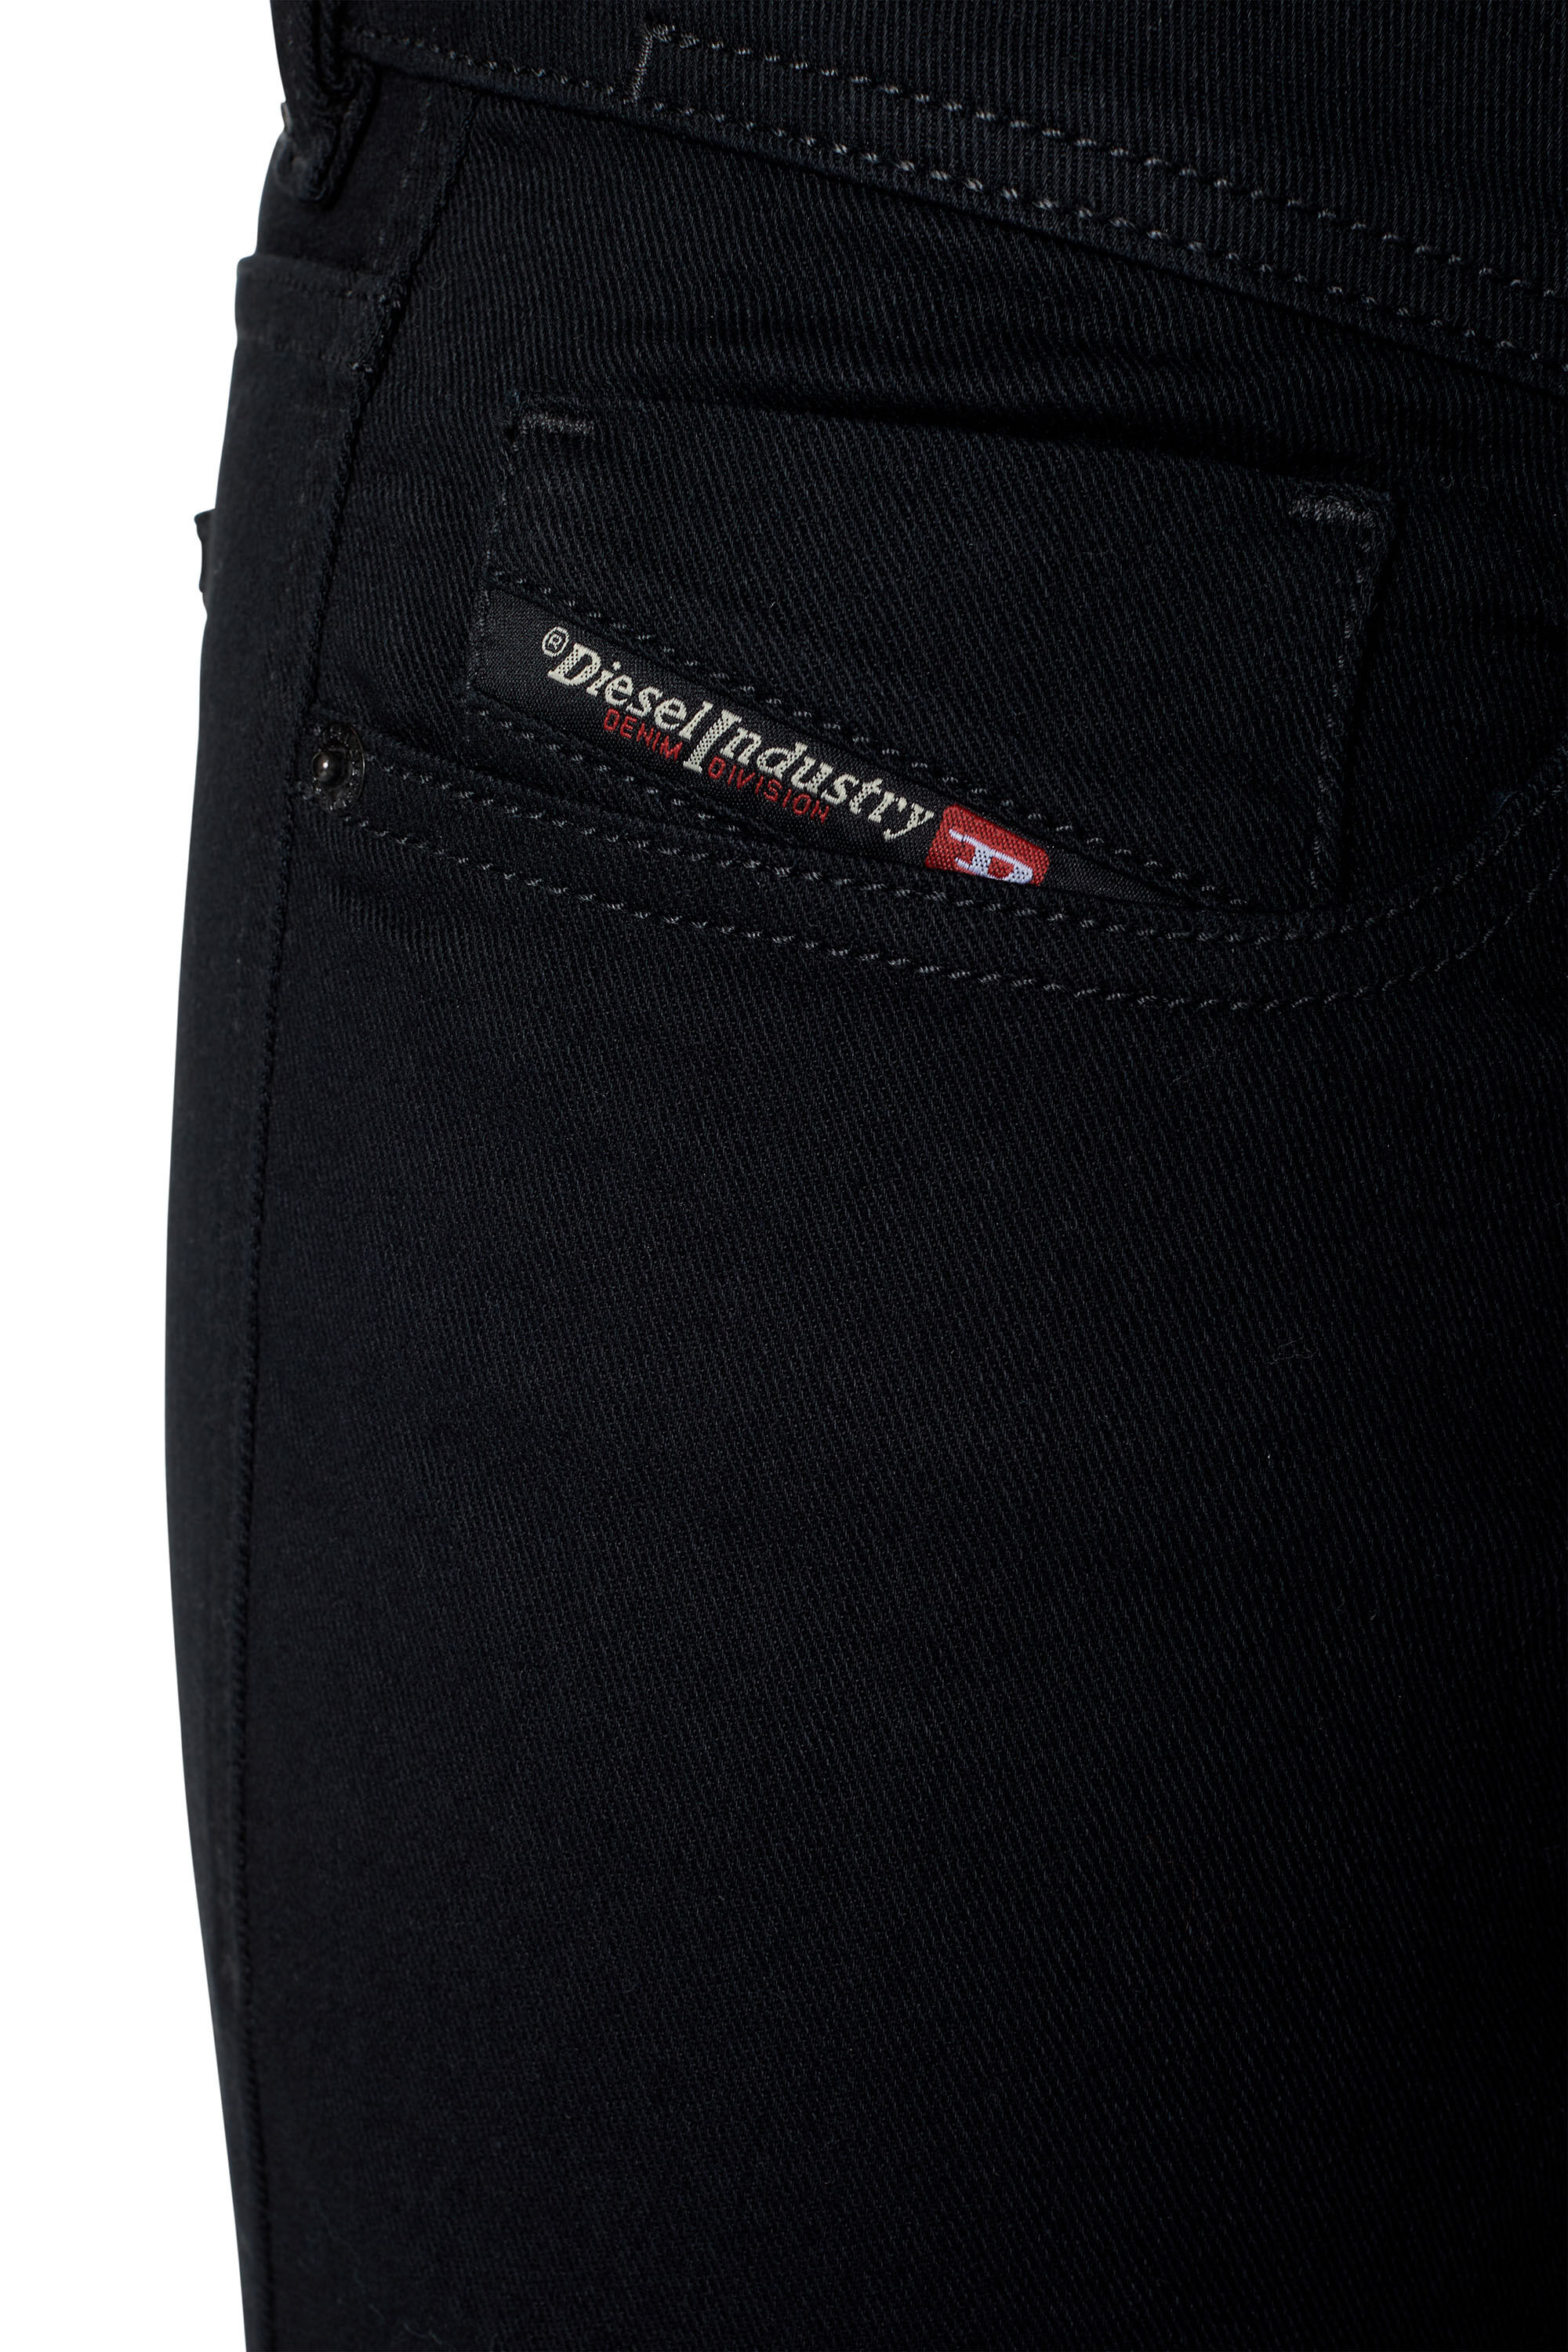 Diesel - Skinny Jeans 1979 Sleenker 09C51, Black/Dark grey - Image 6